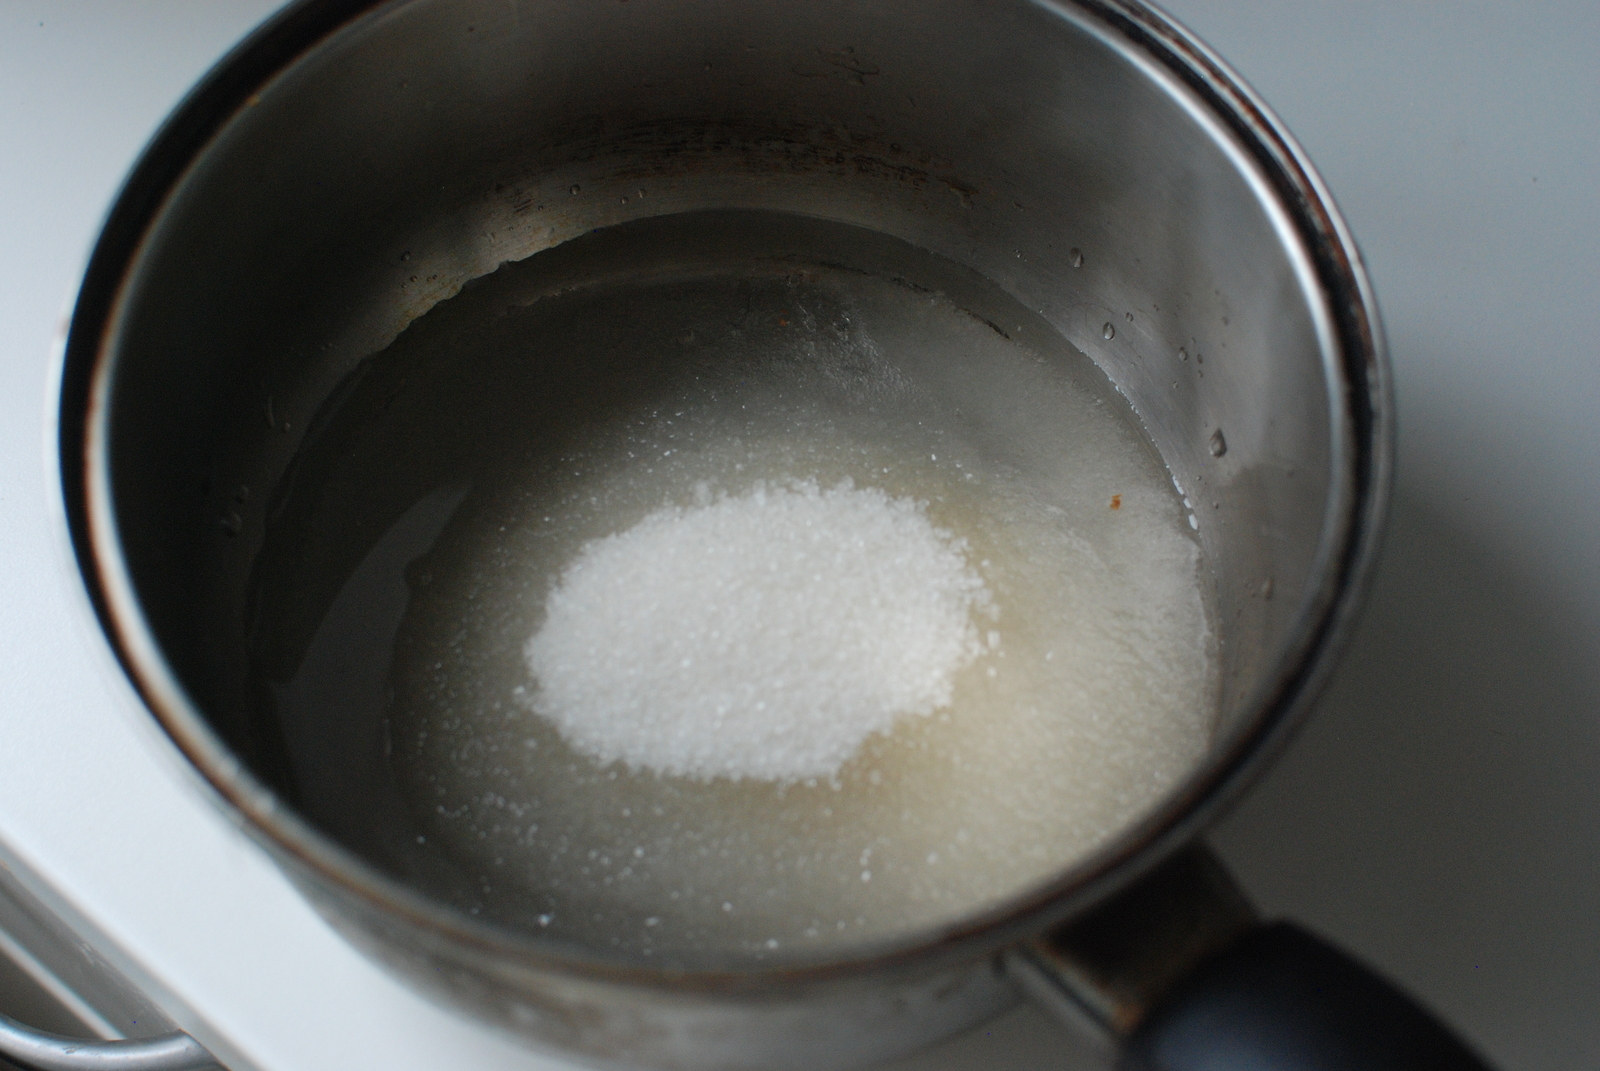 В горячей воде сахар растворяется быстрее. Сахар в кастрюле. Сахарная вода. Сахар в воде. Кастрюля с водой.